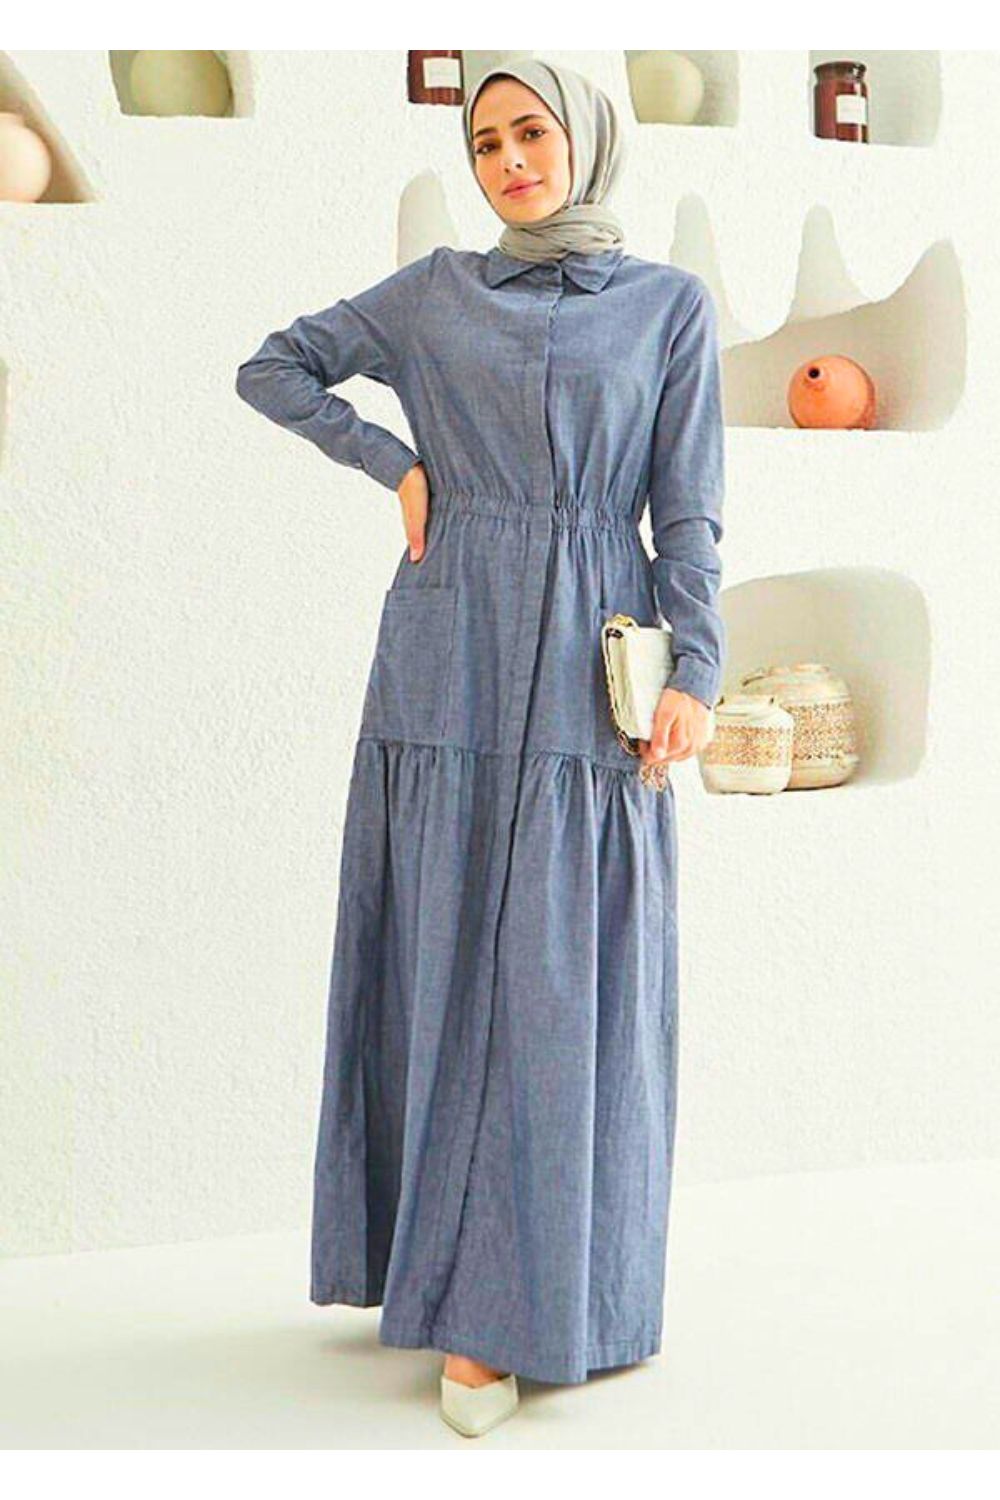 Muslim Women's Long Sleeve Maxi Dress with Tiered Skirt - Modest Design Maxi Dress By Baano 38 Gray Denim 